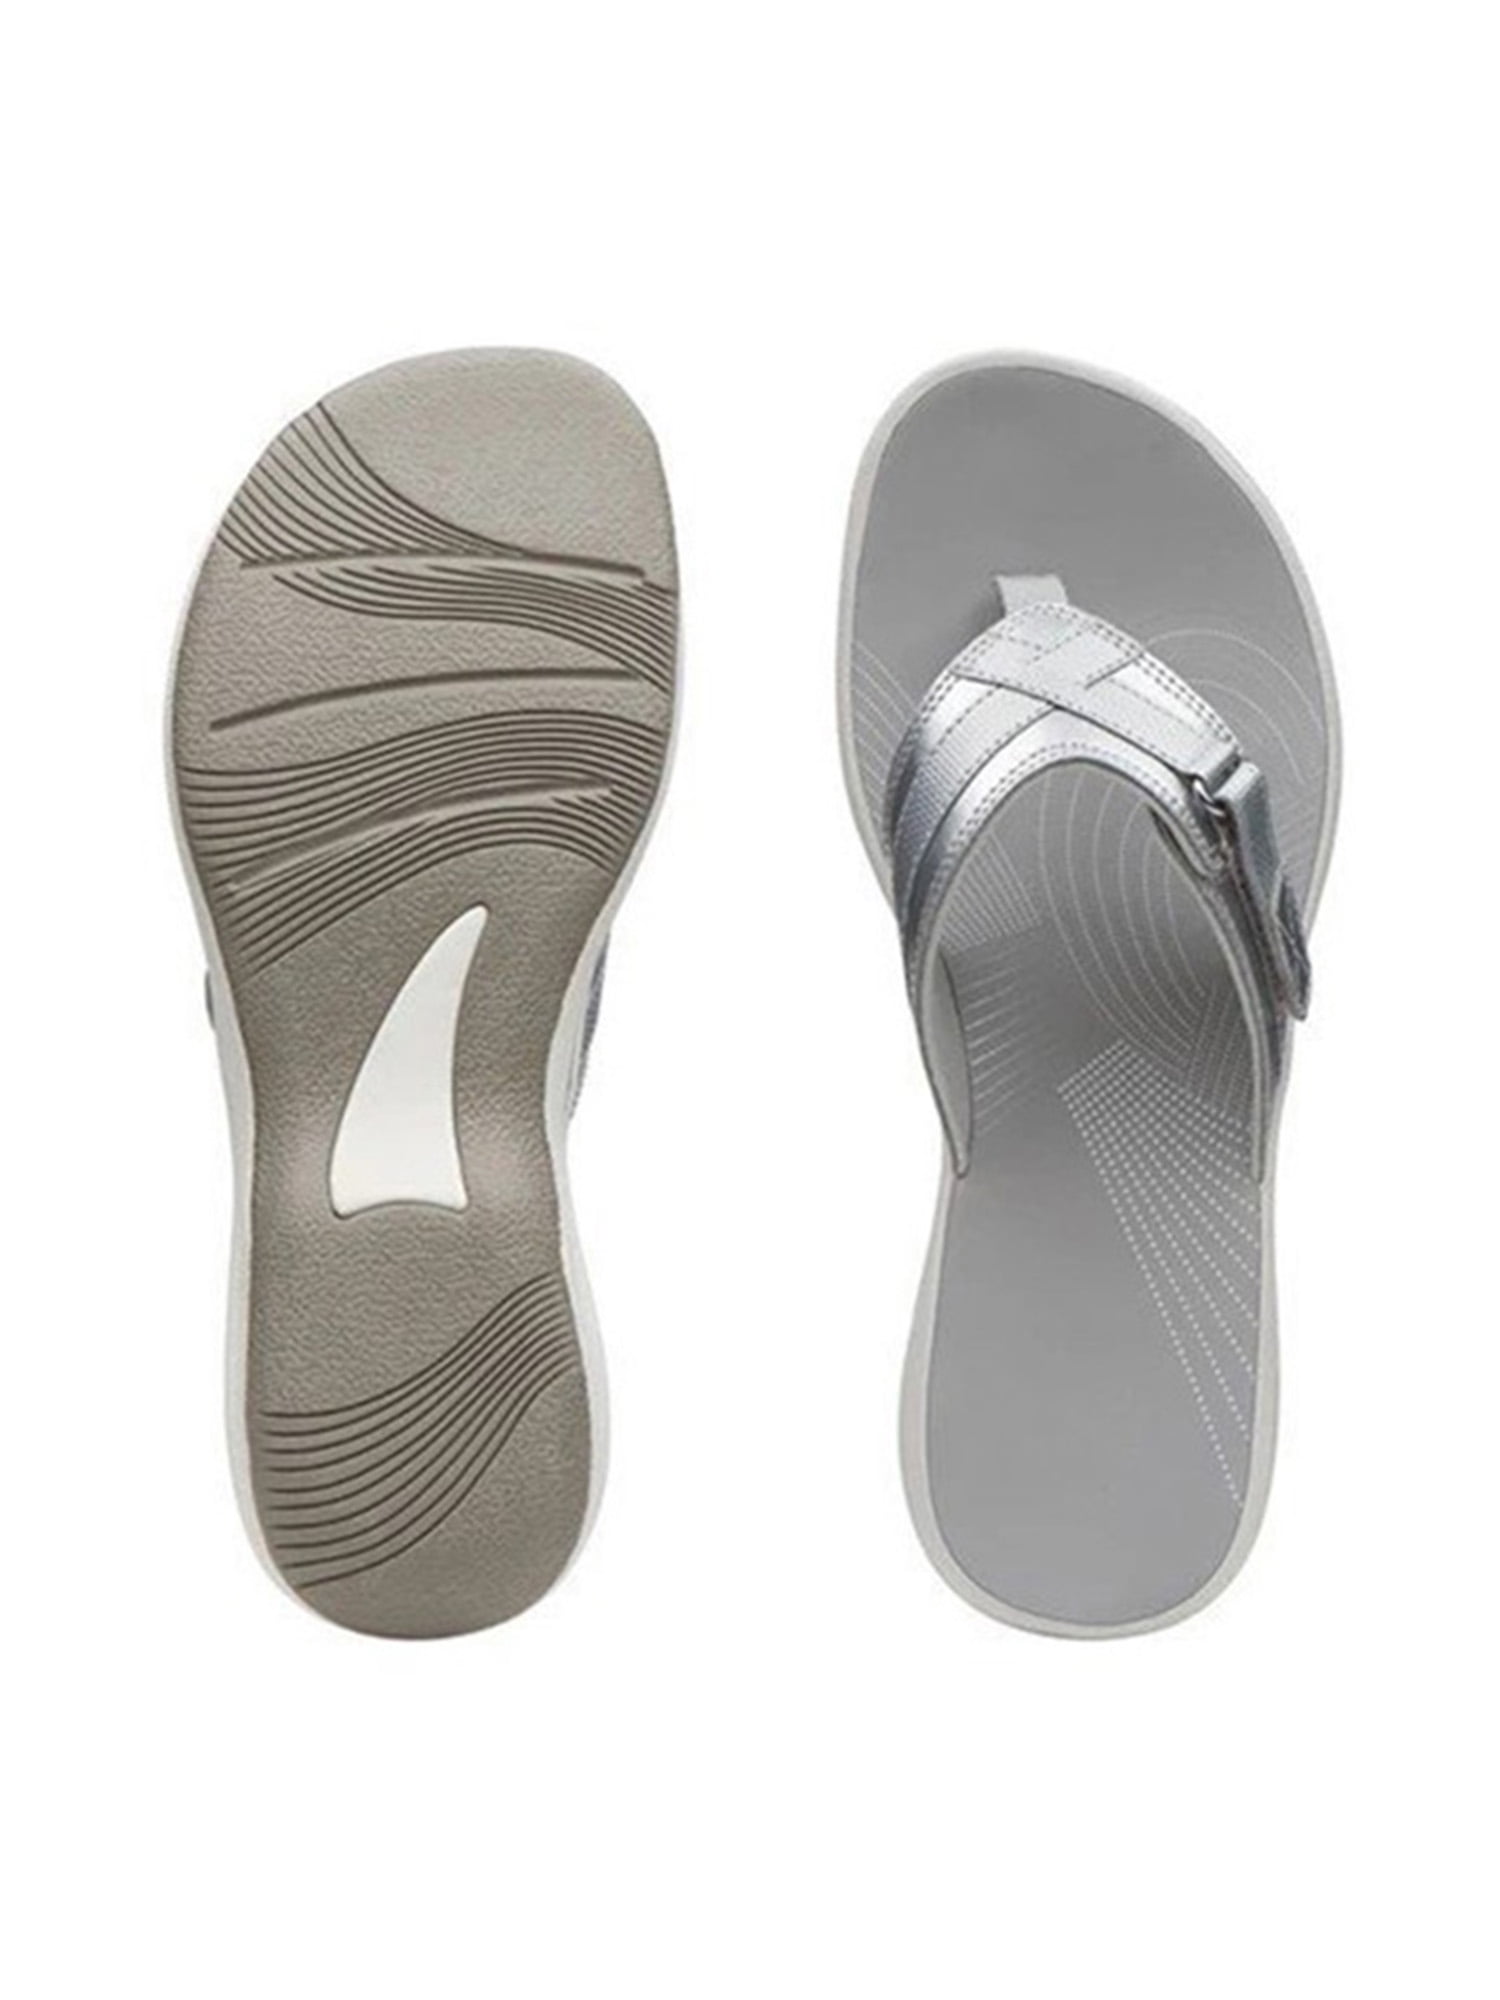 Women's Metal Decor Summer Comfort Casual Thong Flat Flip Flops Sandals Slipper